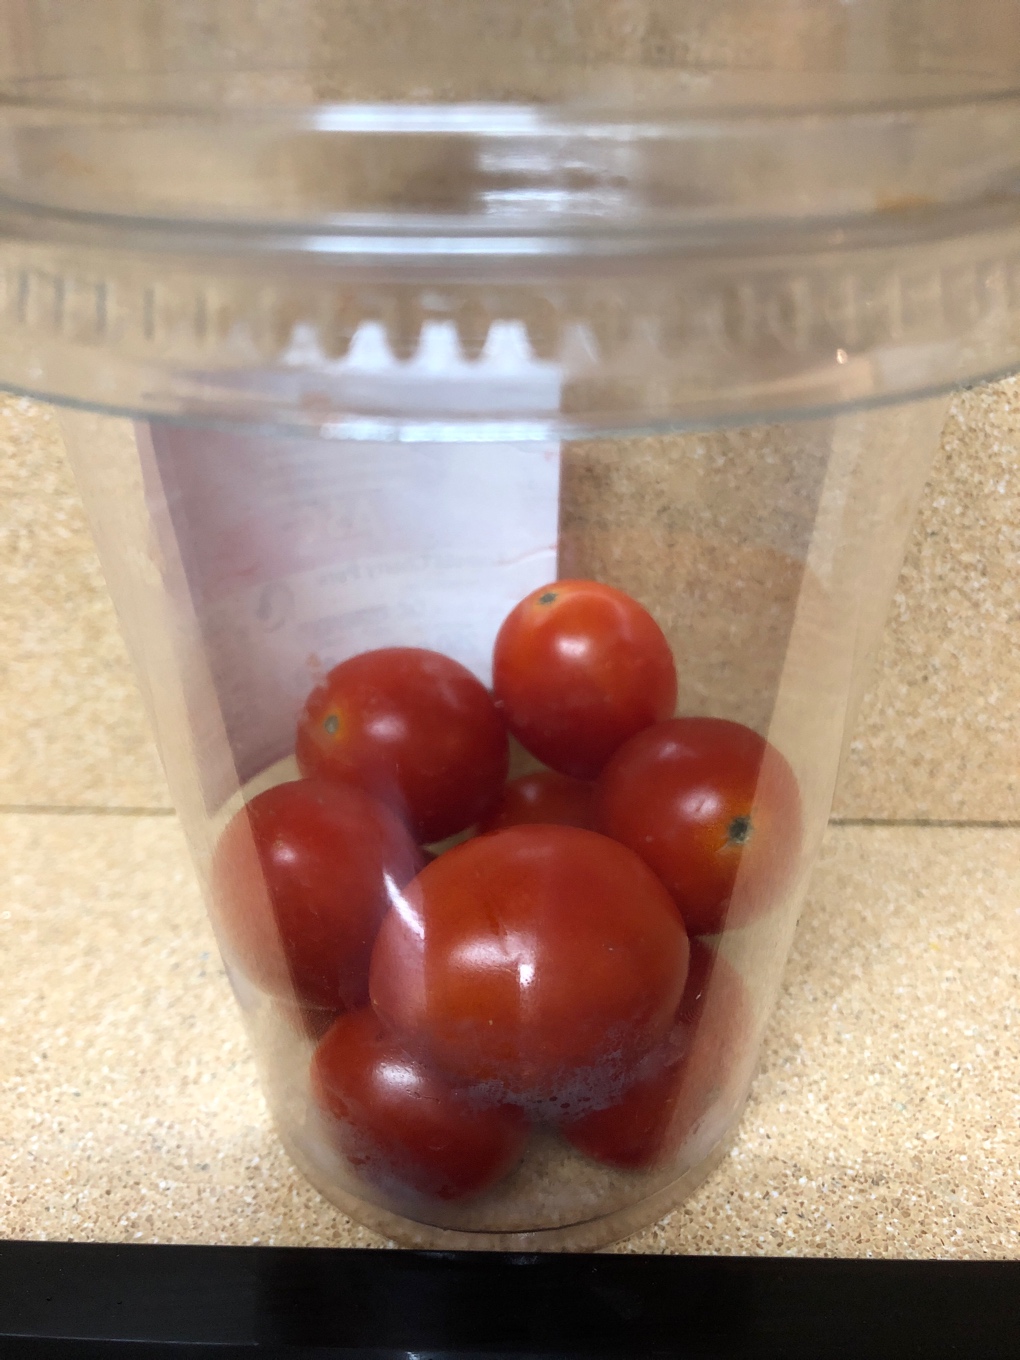 Tomate cherry pera